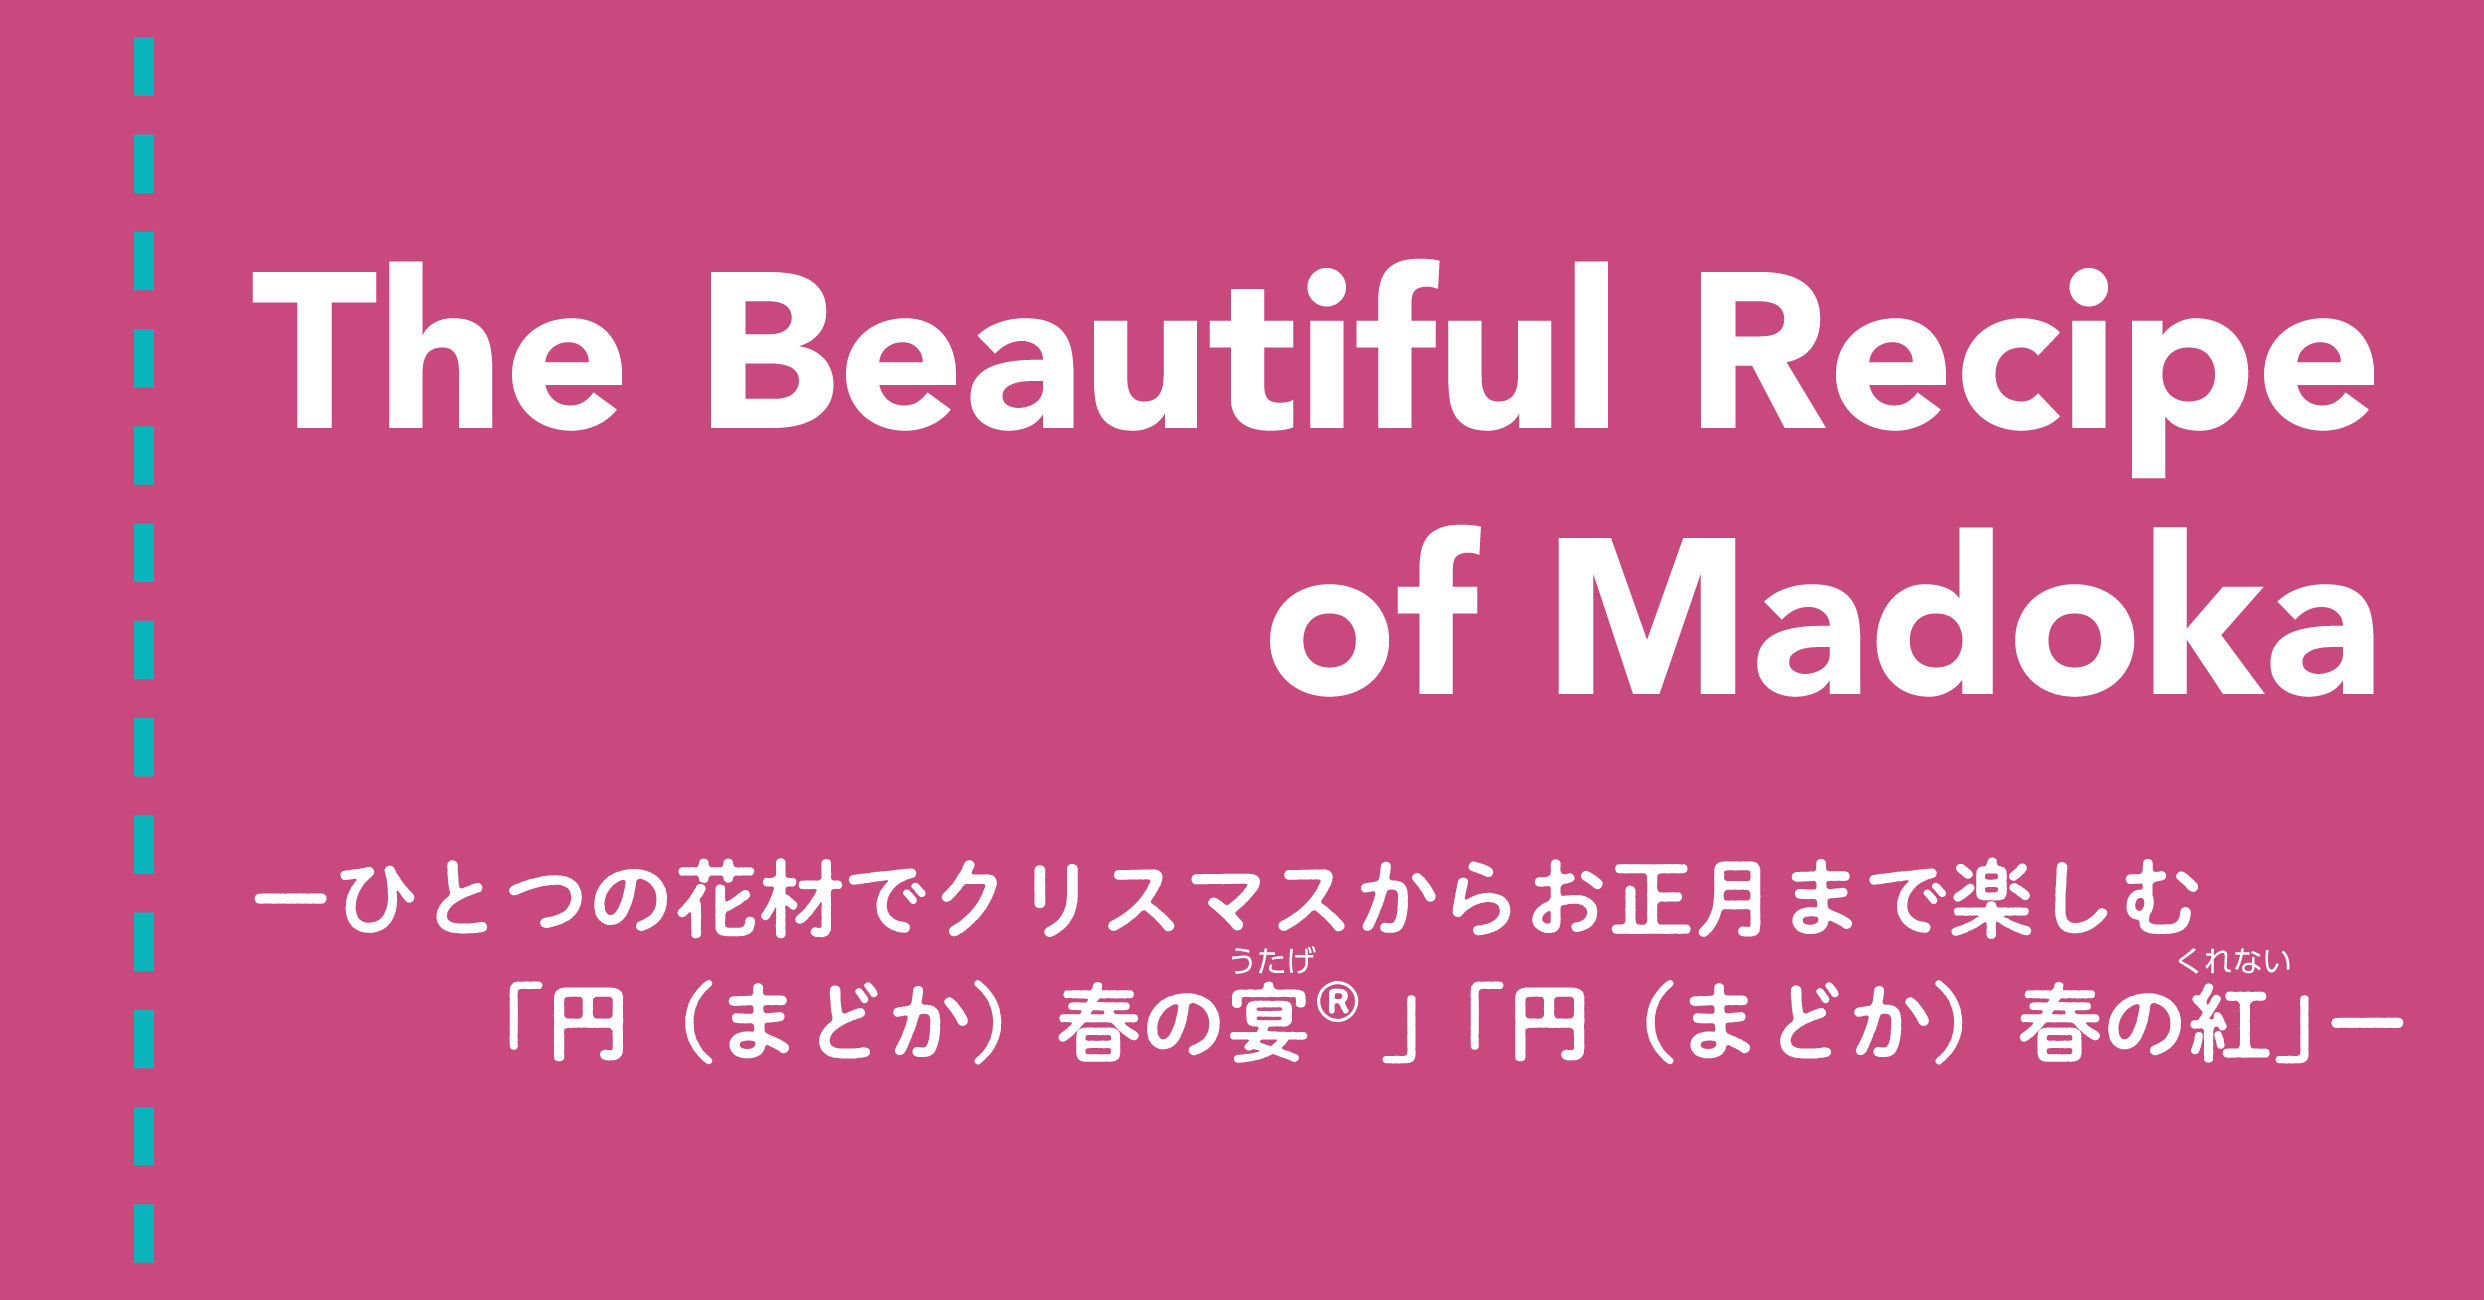 The Beautiful Recipe of Madoka -ひとつの花材でクリスマスからお正月まで楽しむ「円（まどか）春の宴」「円（まどか）春の紅」レシピ-